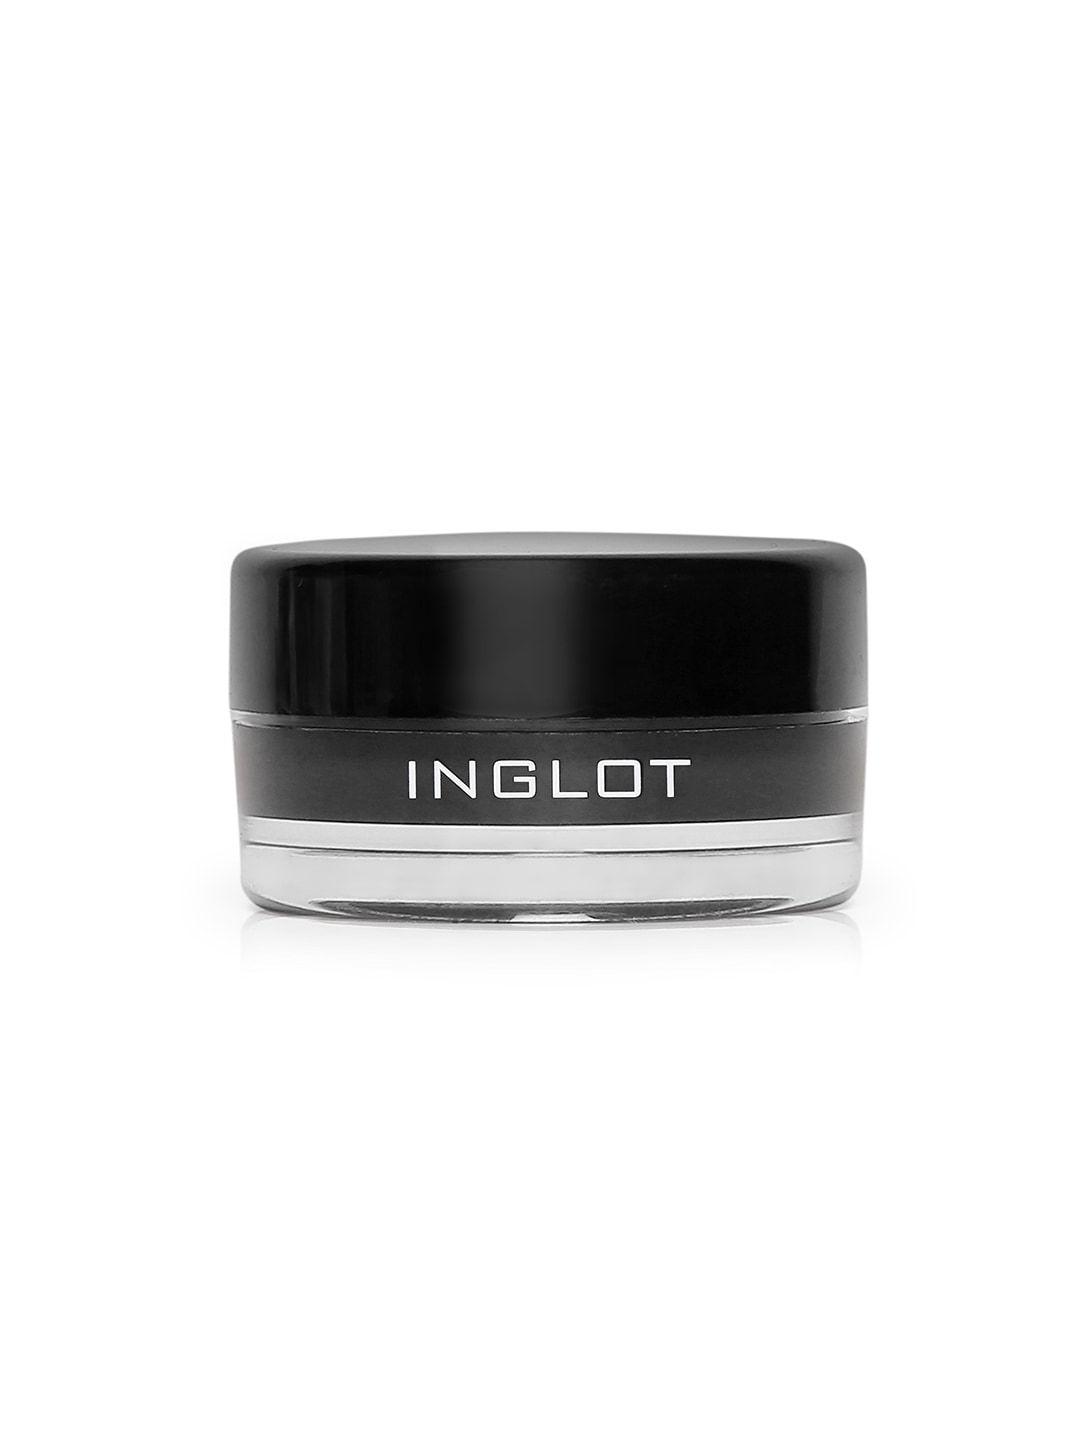 inglot amc eyeliner gel - 77